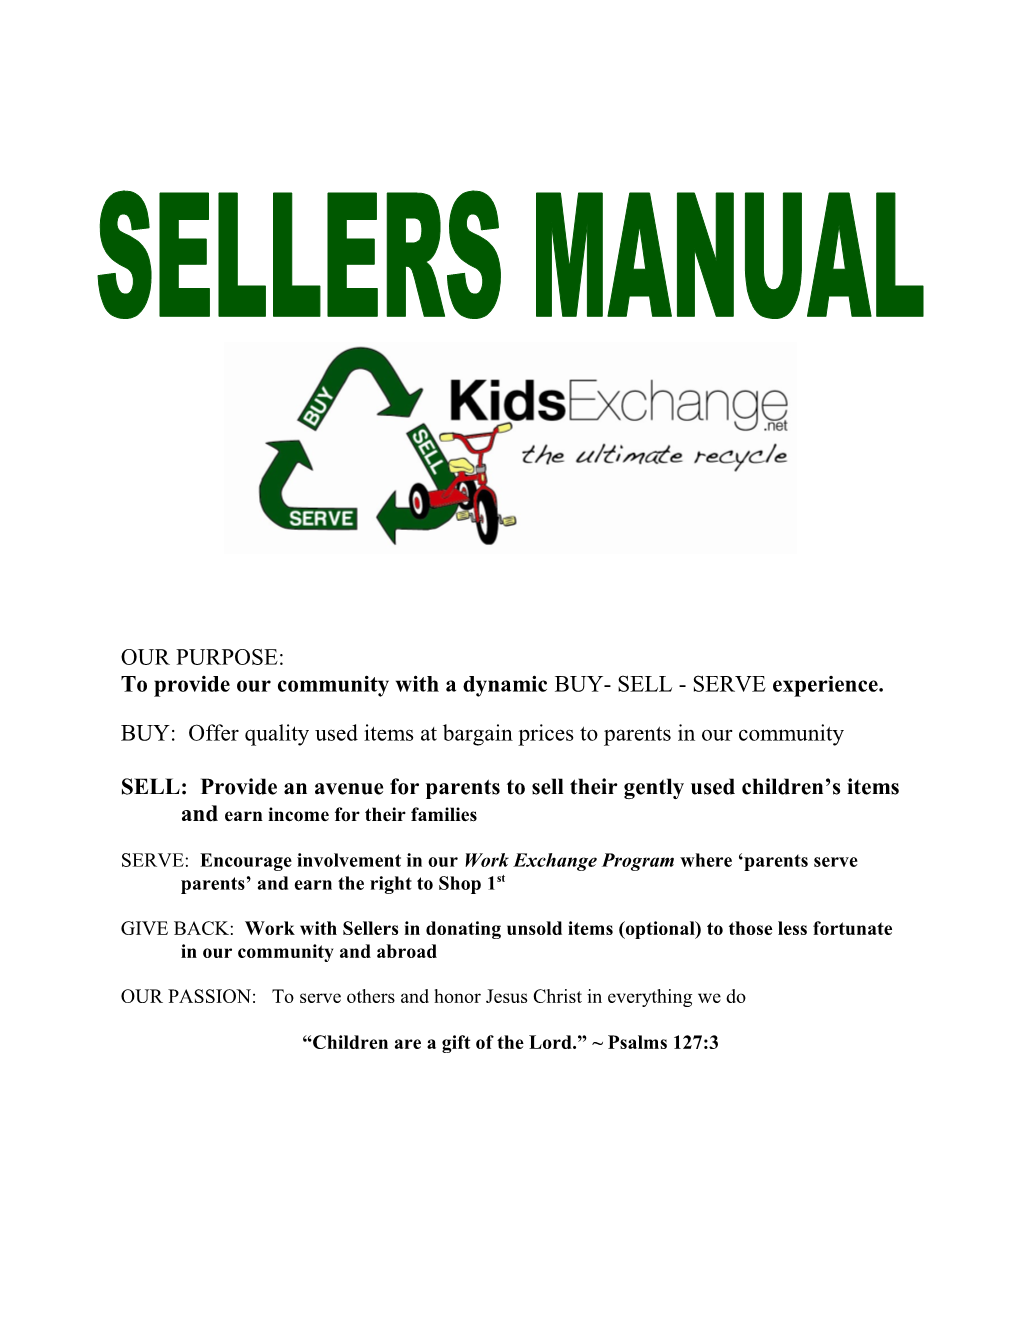 Kids Exchange Sellers Manual